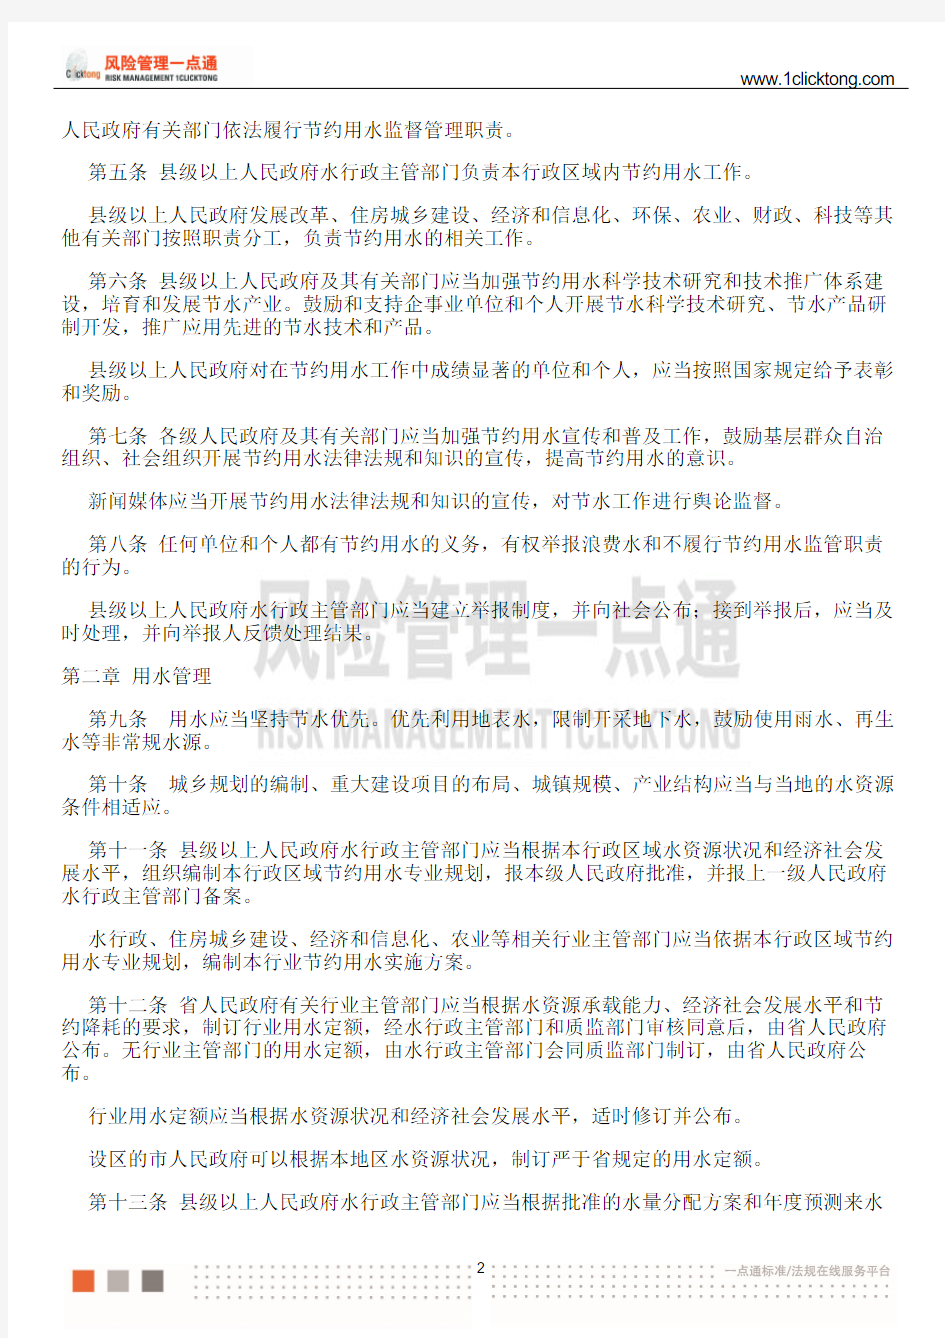 安徽省节约用水条例(2015年发布)